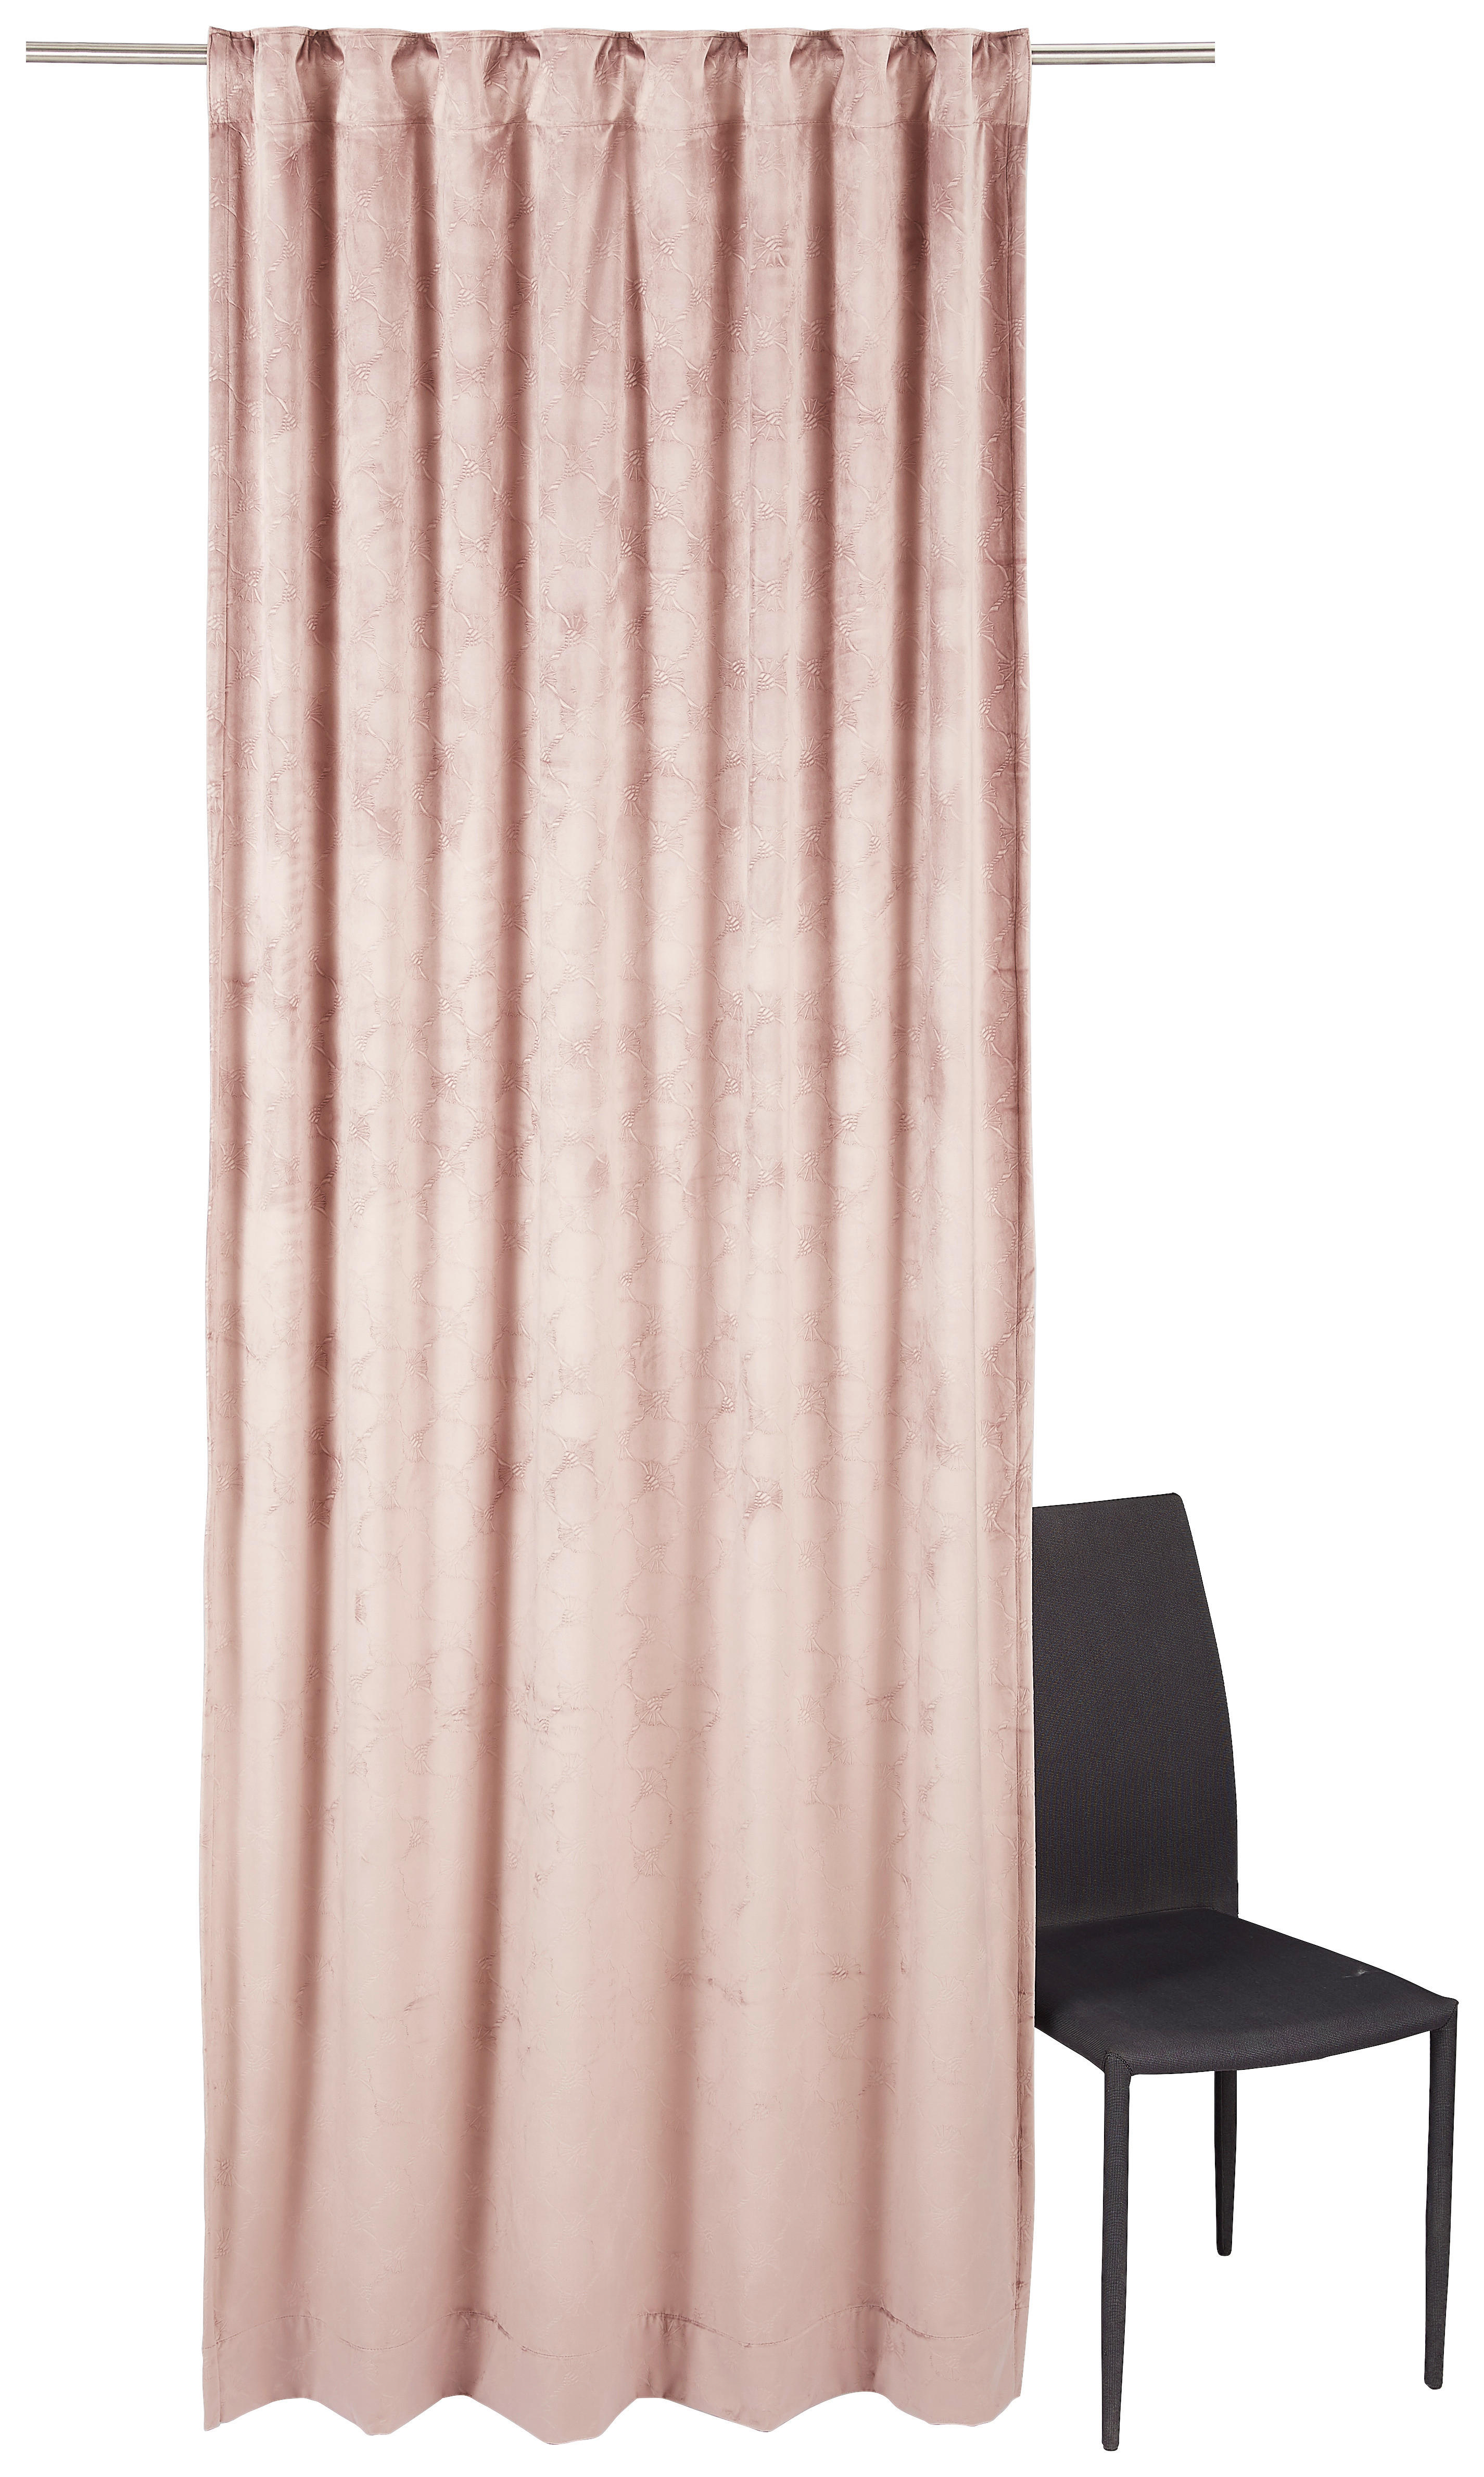 Vorhang Faltenband Gardine Store Schal Blickdicht schwere Qualität 135/245 Braun 